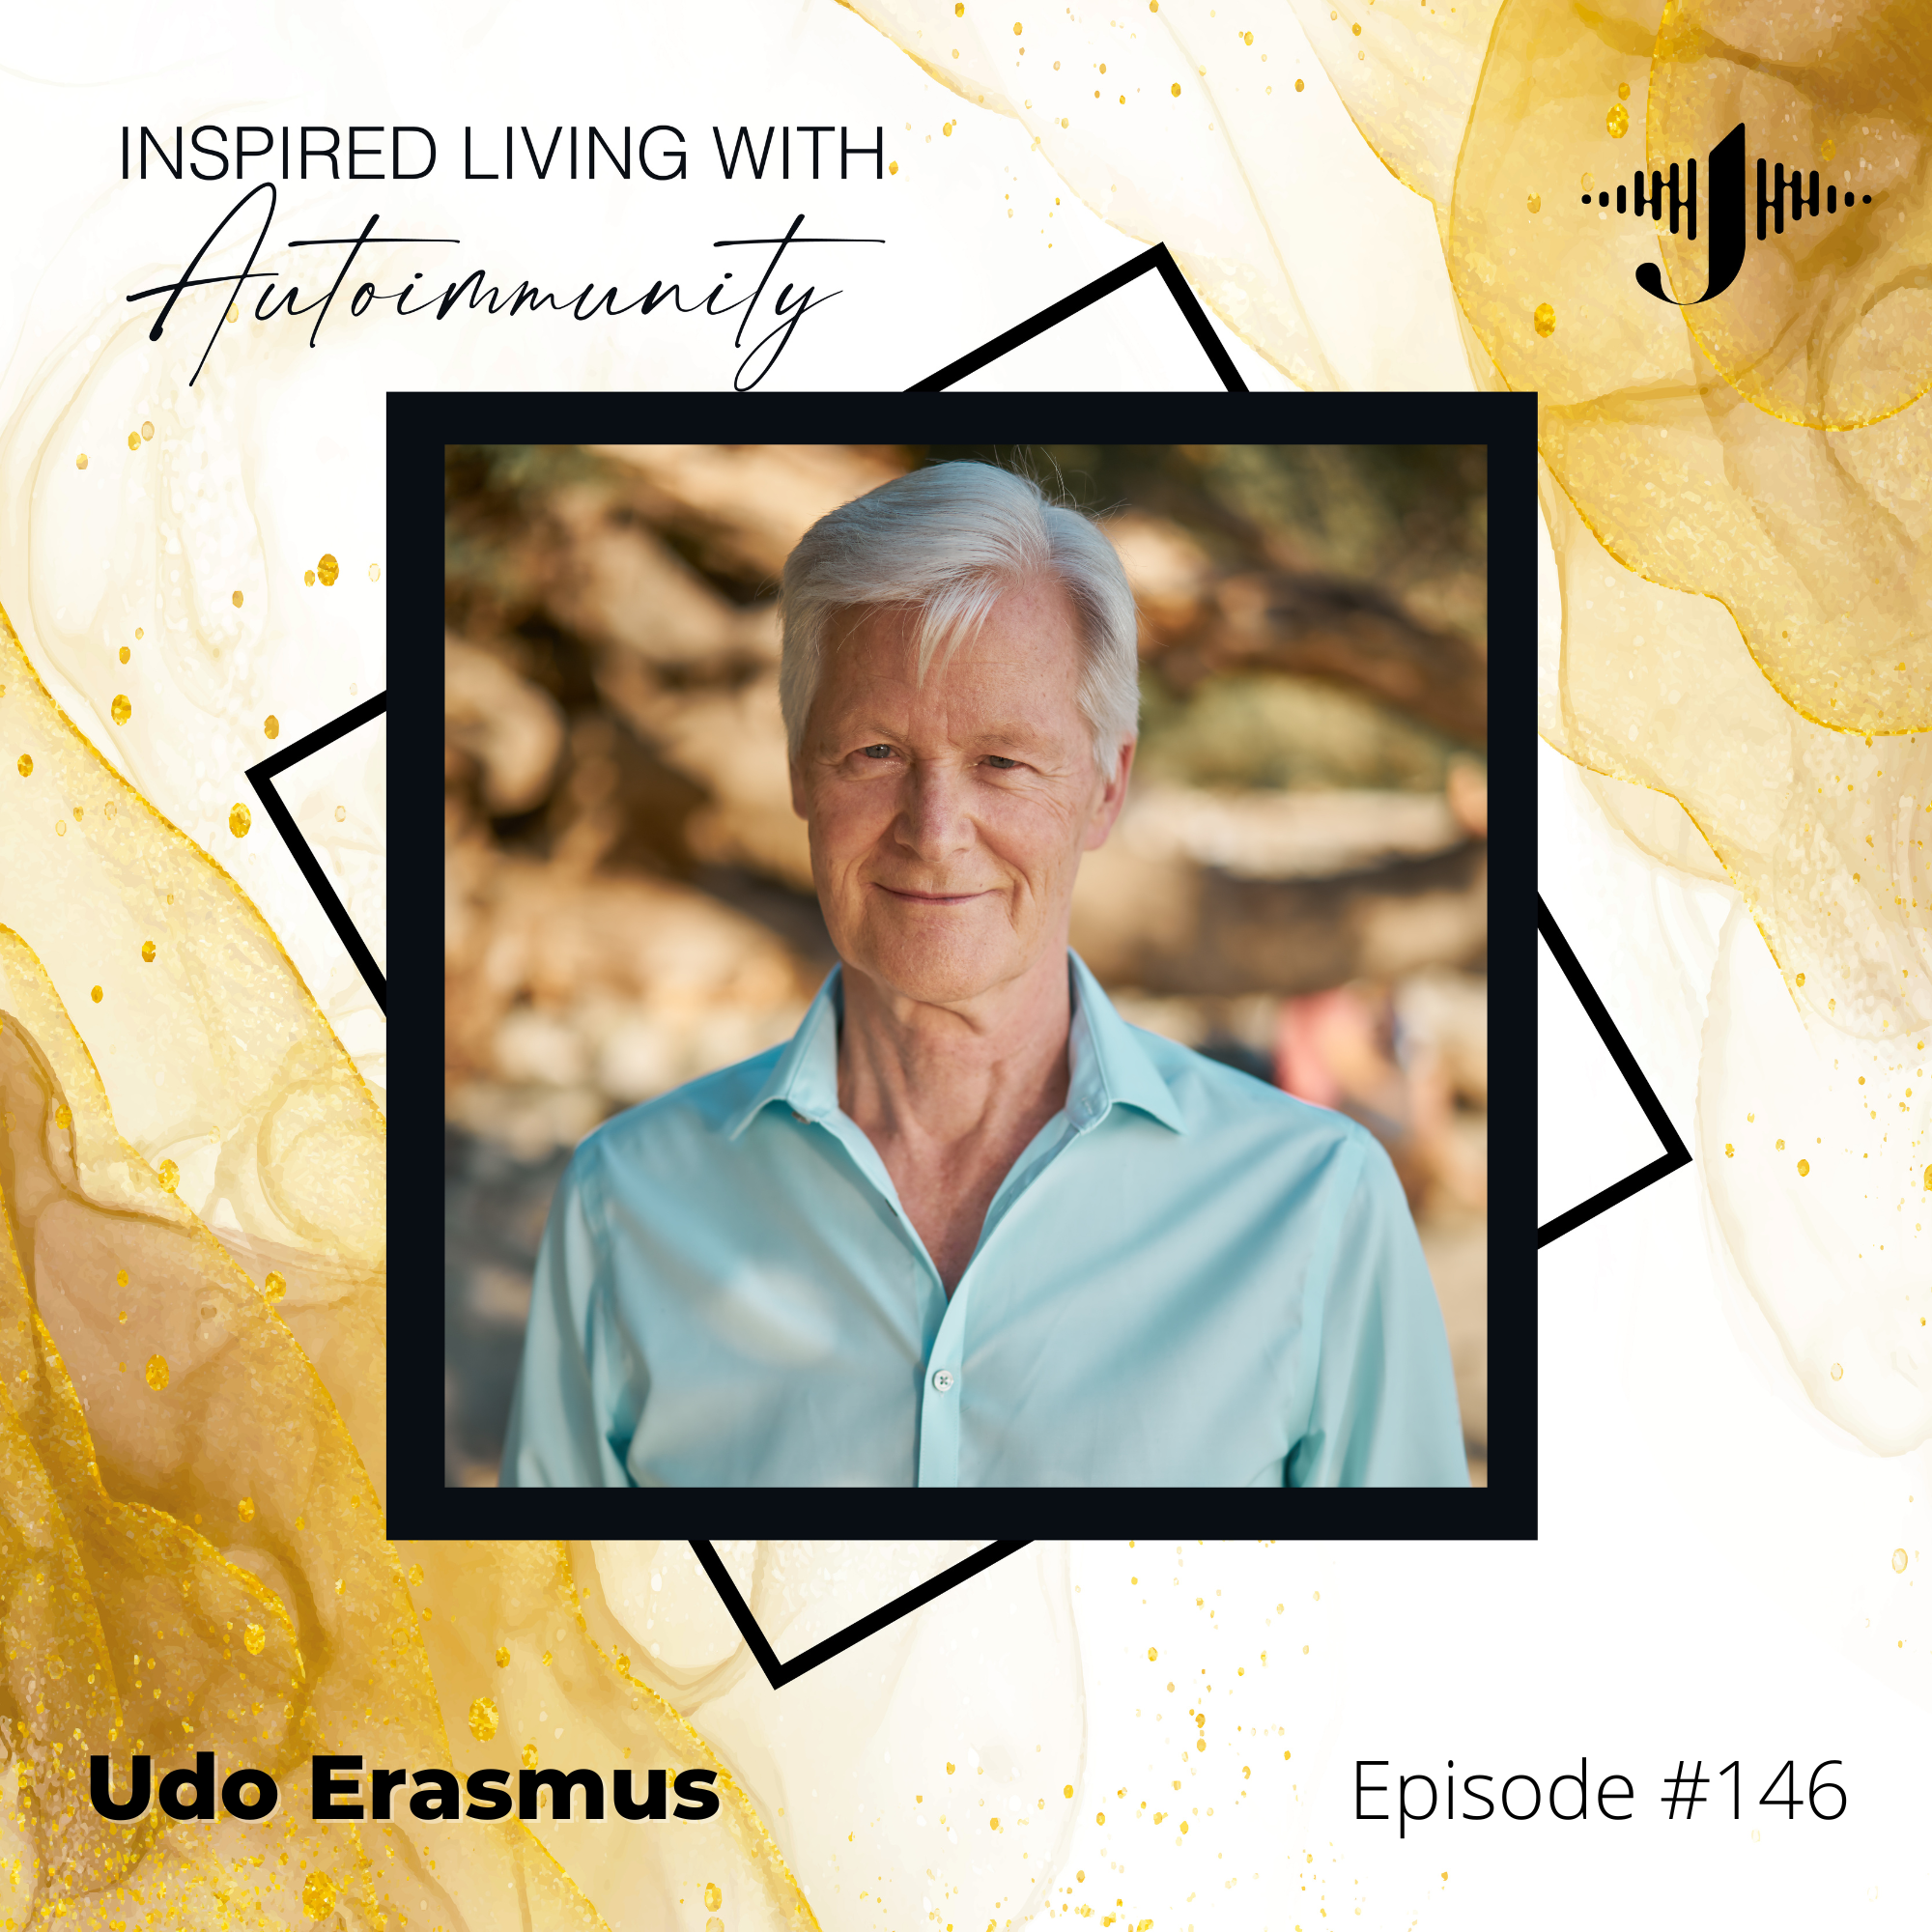 Udo Erasmus: Finding Balance Through Presence and Awareness